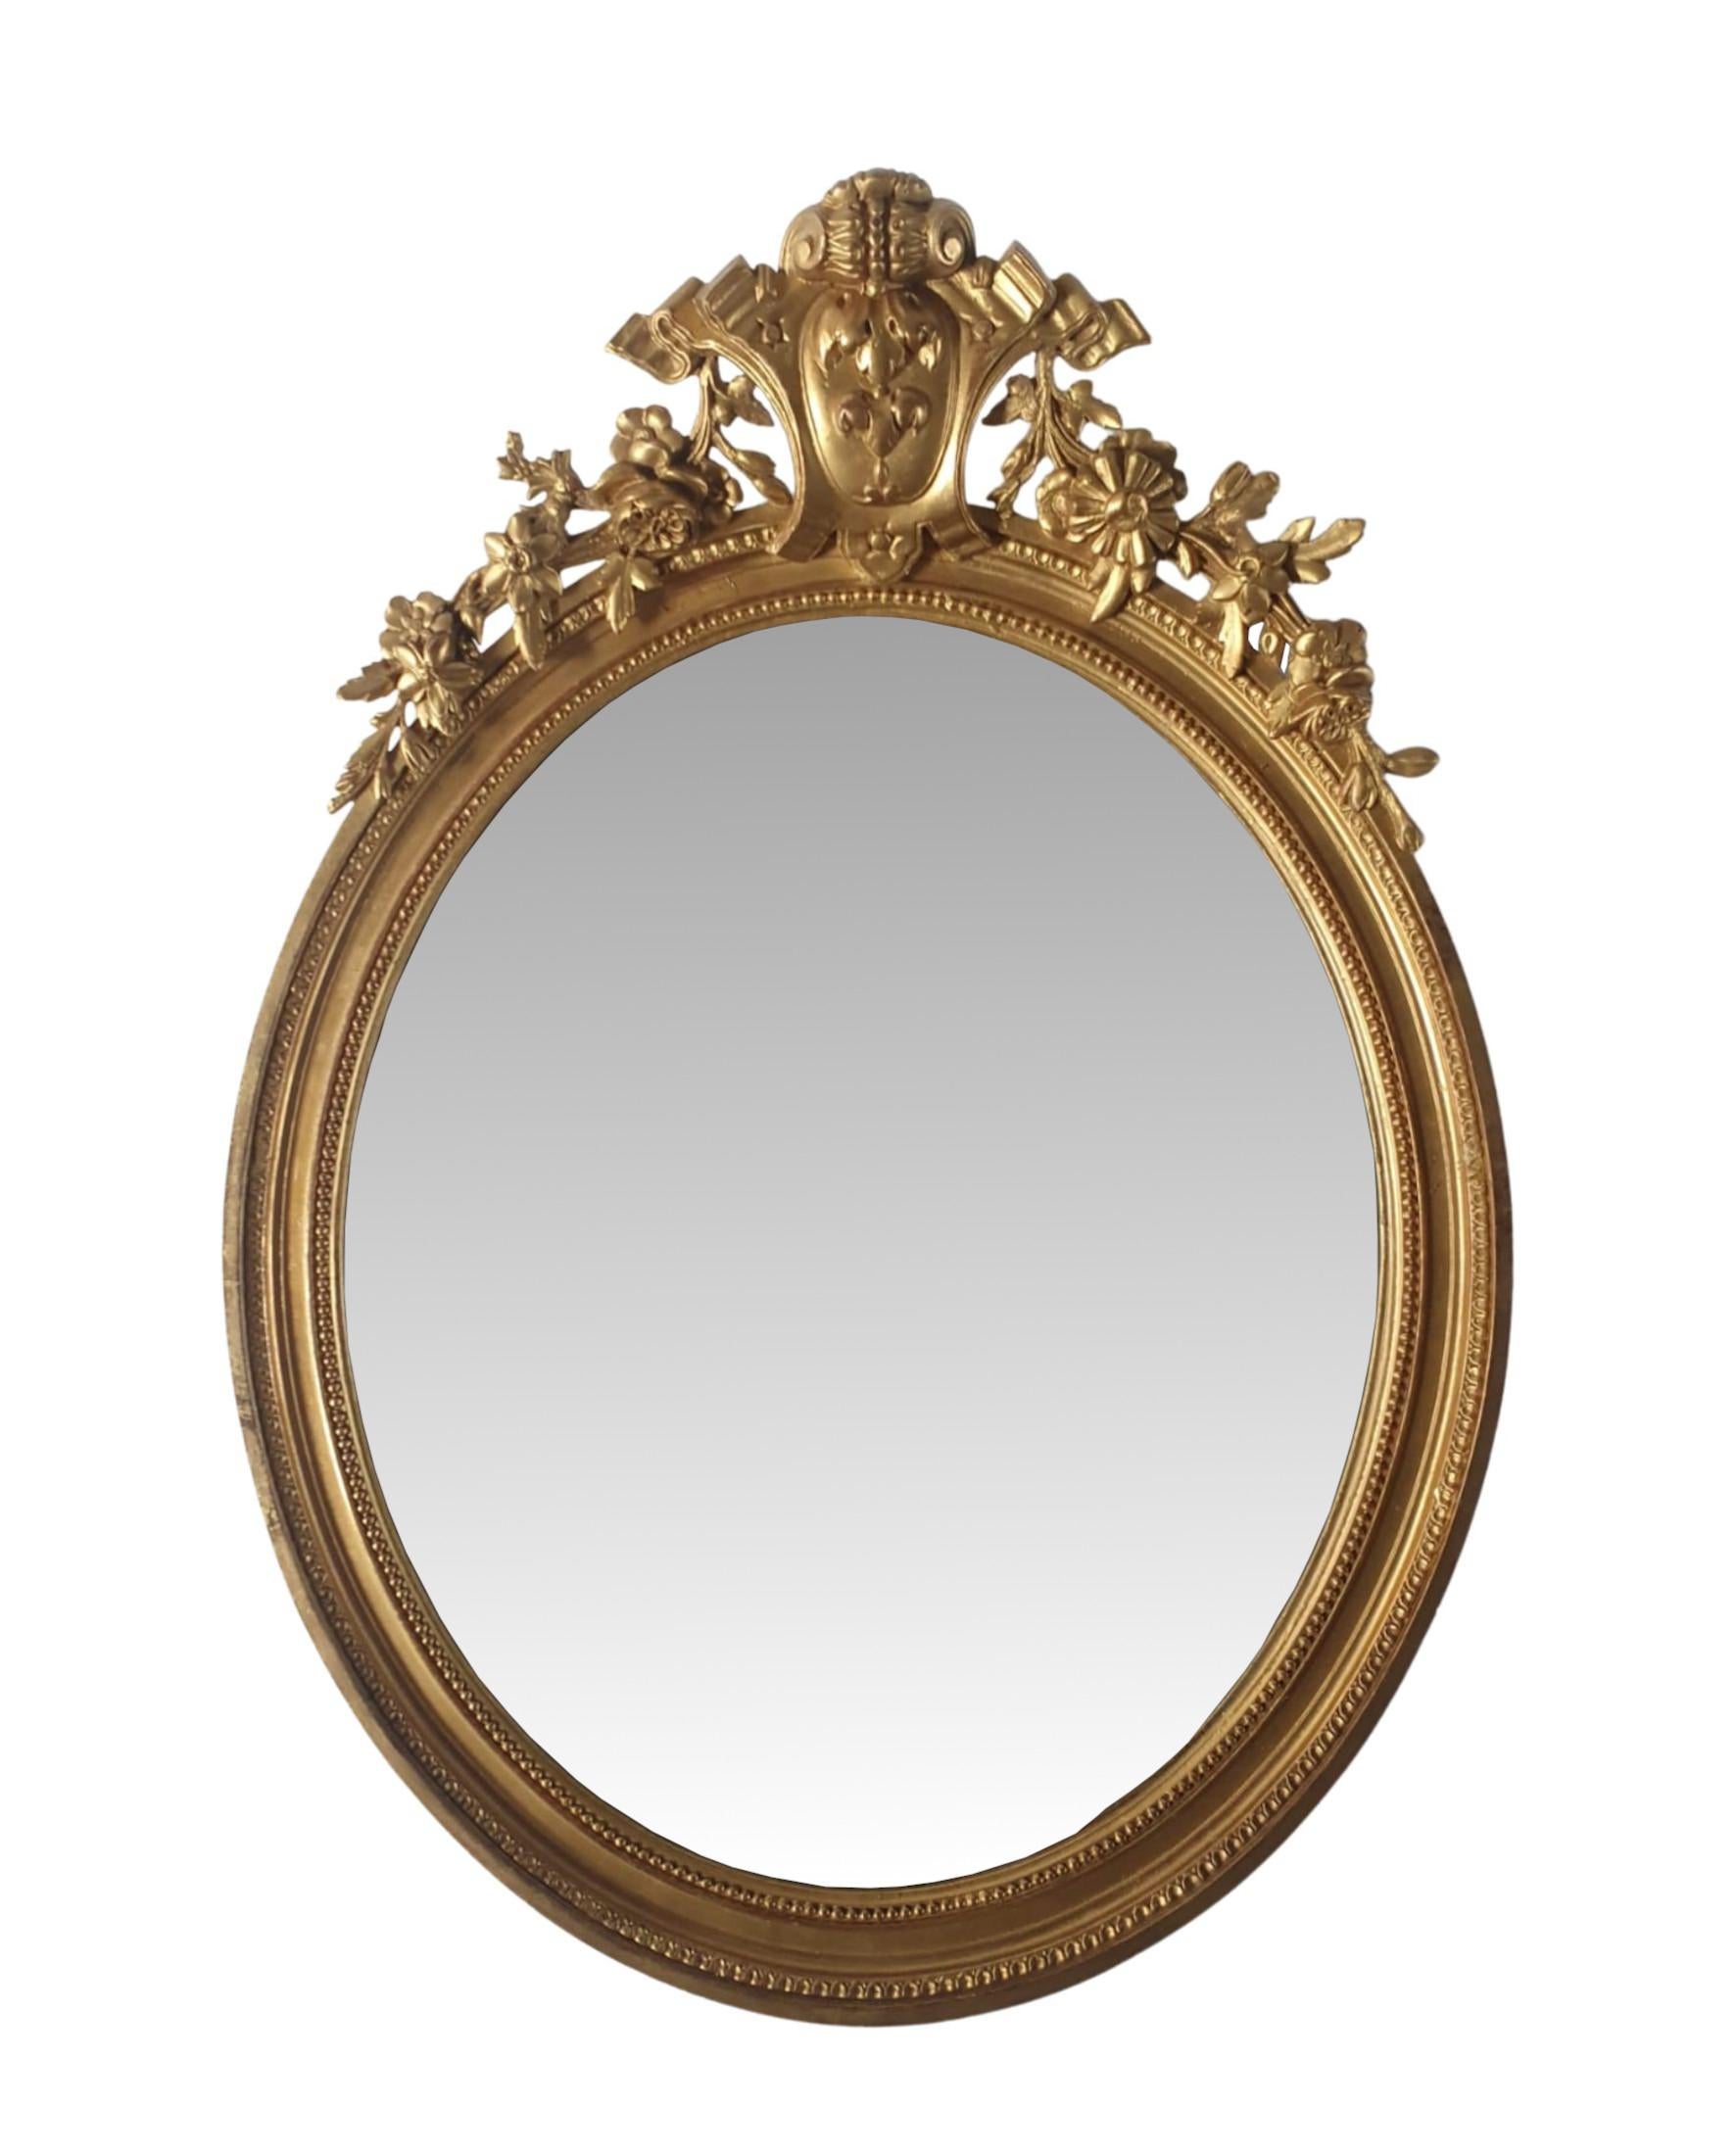 Ein sehr seltenes Paar vergoldeter Pfeilerspiegel aus dem 19. Jahrhundert, fein von Hand geschnitzt, von hervorragender Qualität und in ausgezeichnetem Zustand.   Die ovale Spiegelglasplatte befindet sich in einem fabelhaften, profilierten und